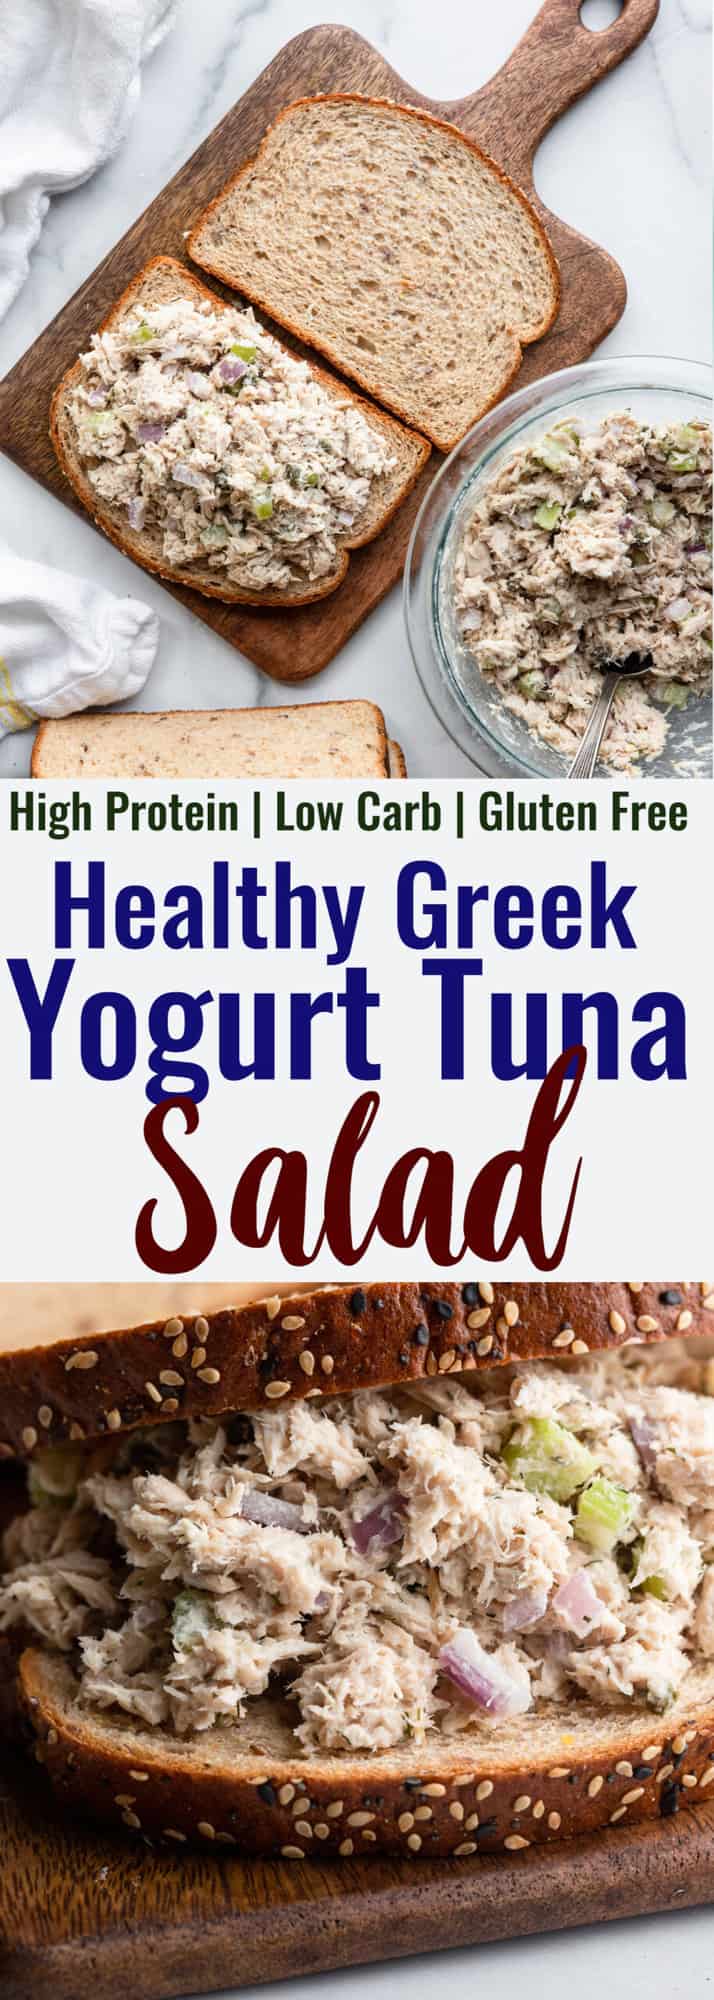 Healthy Tuna Salad photo collage